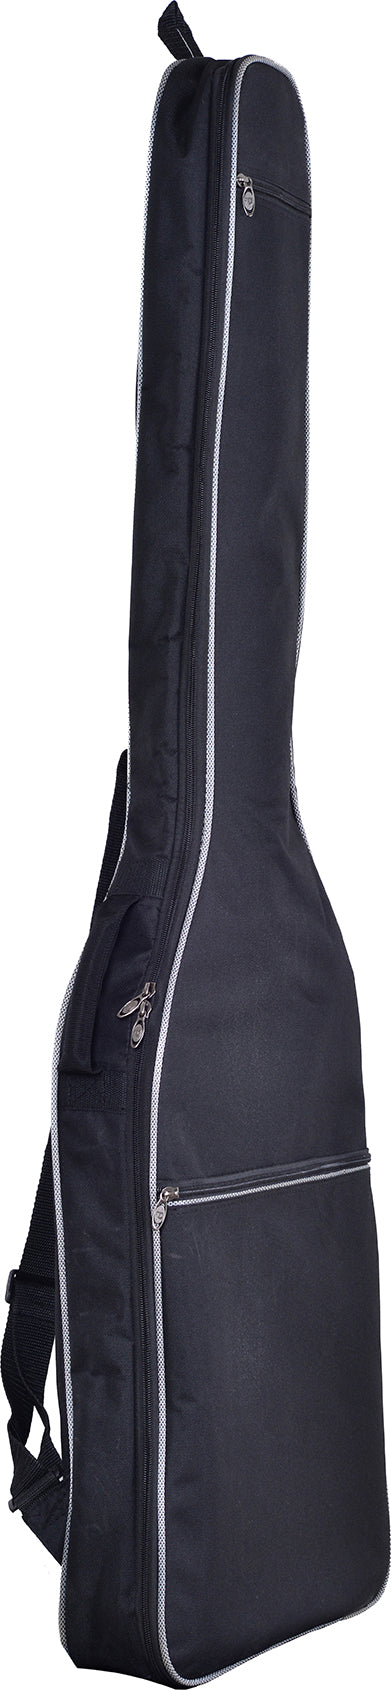 Profile PB-T Economical 3/4 Size Guitar Bag